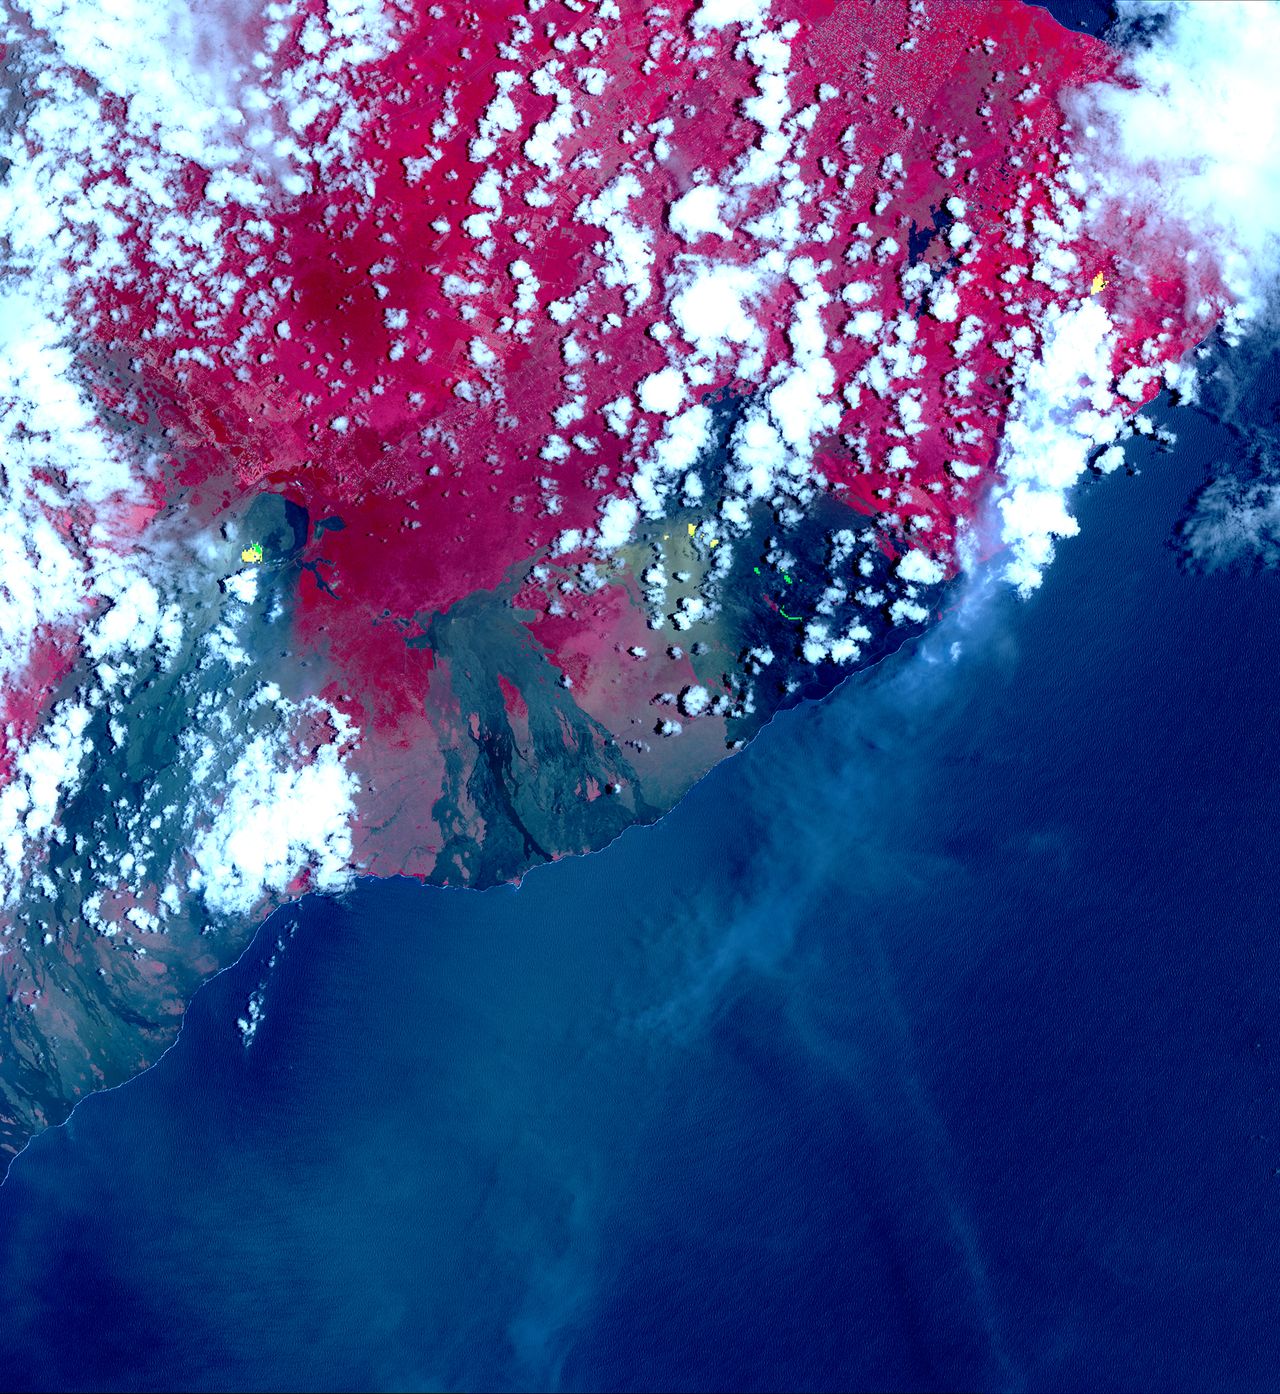 NASA udostępnia zdjęcia satelitarne z erupcji wulkanu. Pokazują rozmiar kataklizmu